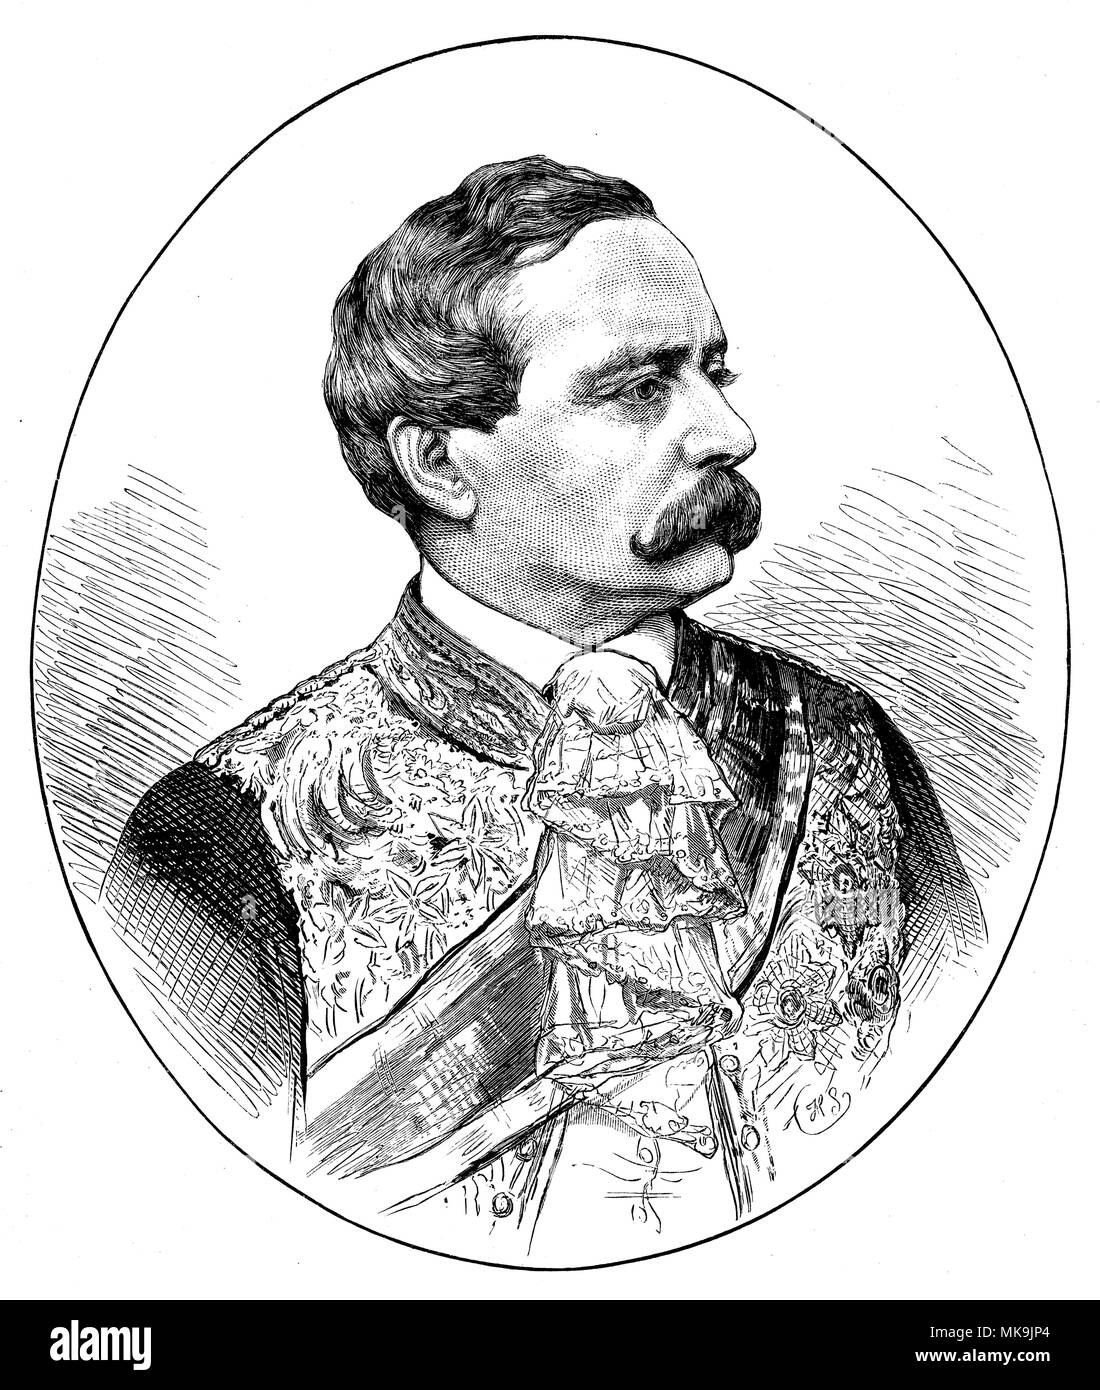 Clodwig Karl Victor, Prince of Hohenlohe / Fürst von Hohenlohe-Schillingsfürst, German ambassador in Paris,   1875 Stock Photo